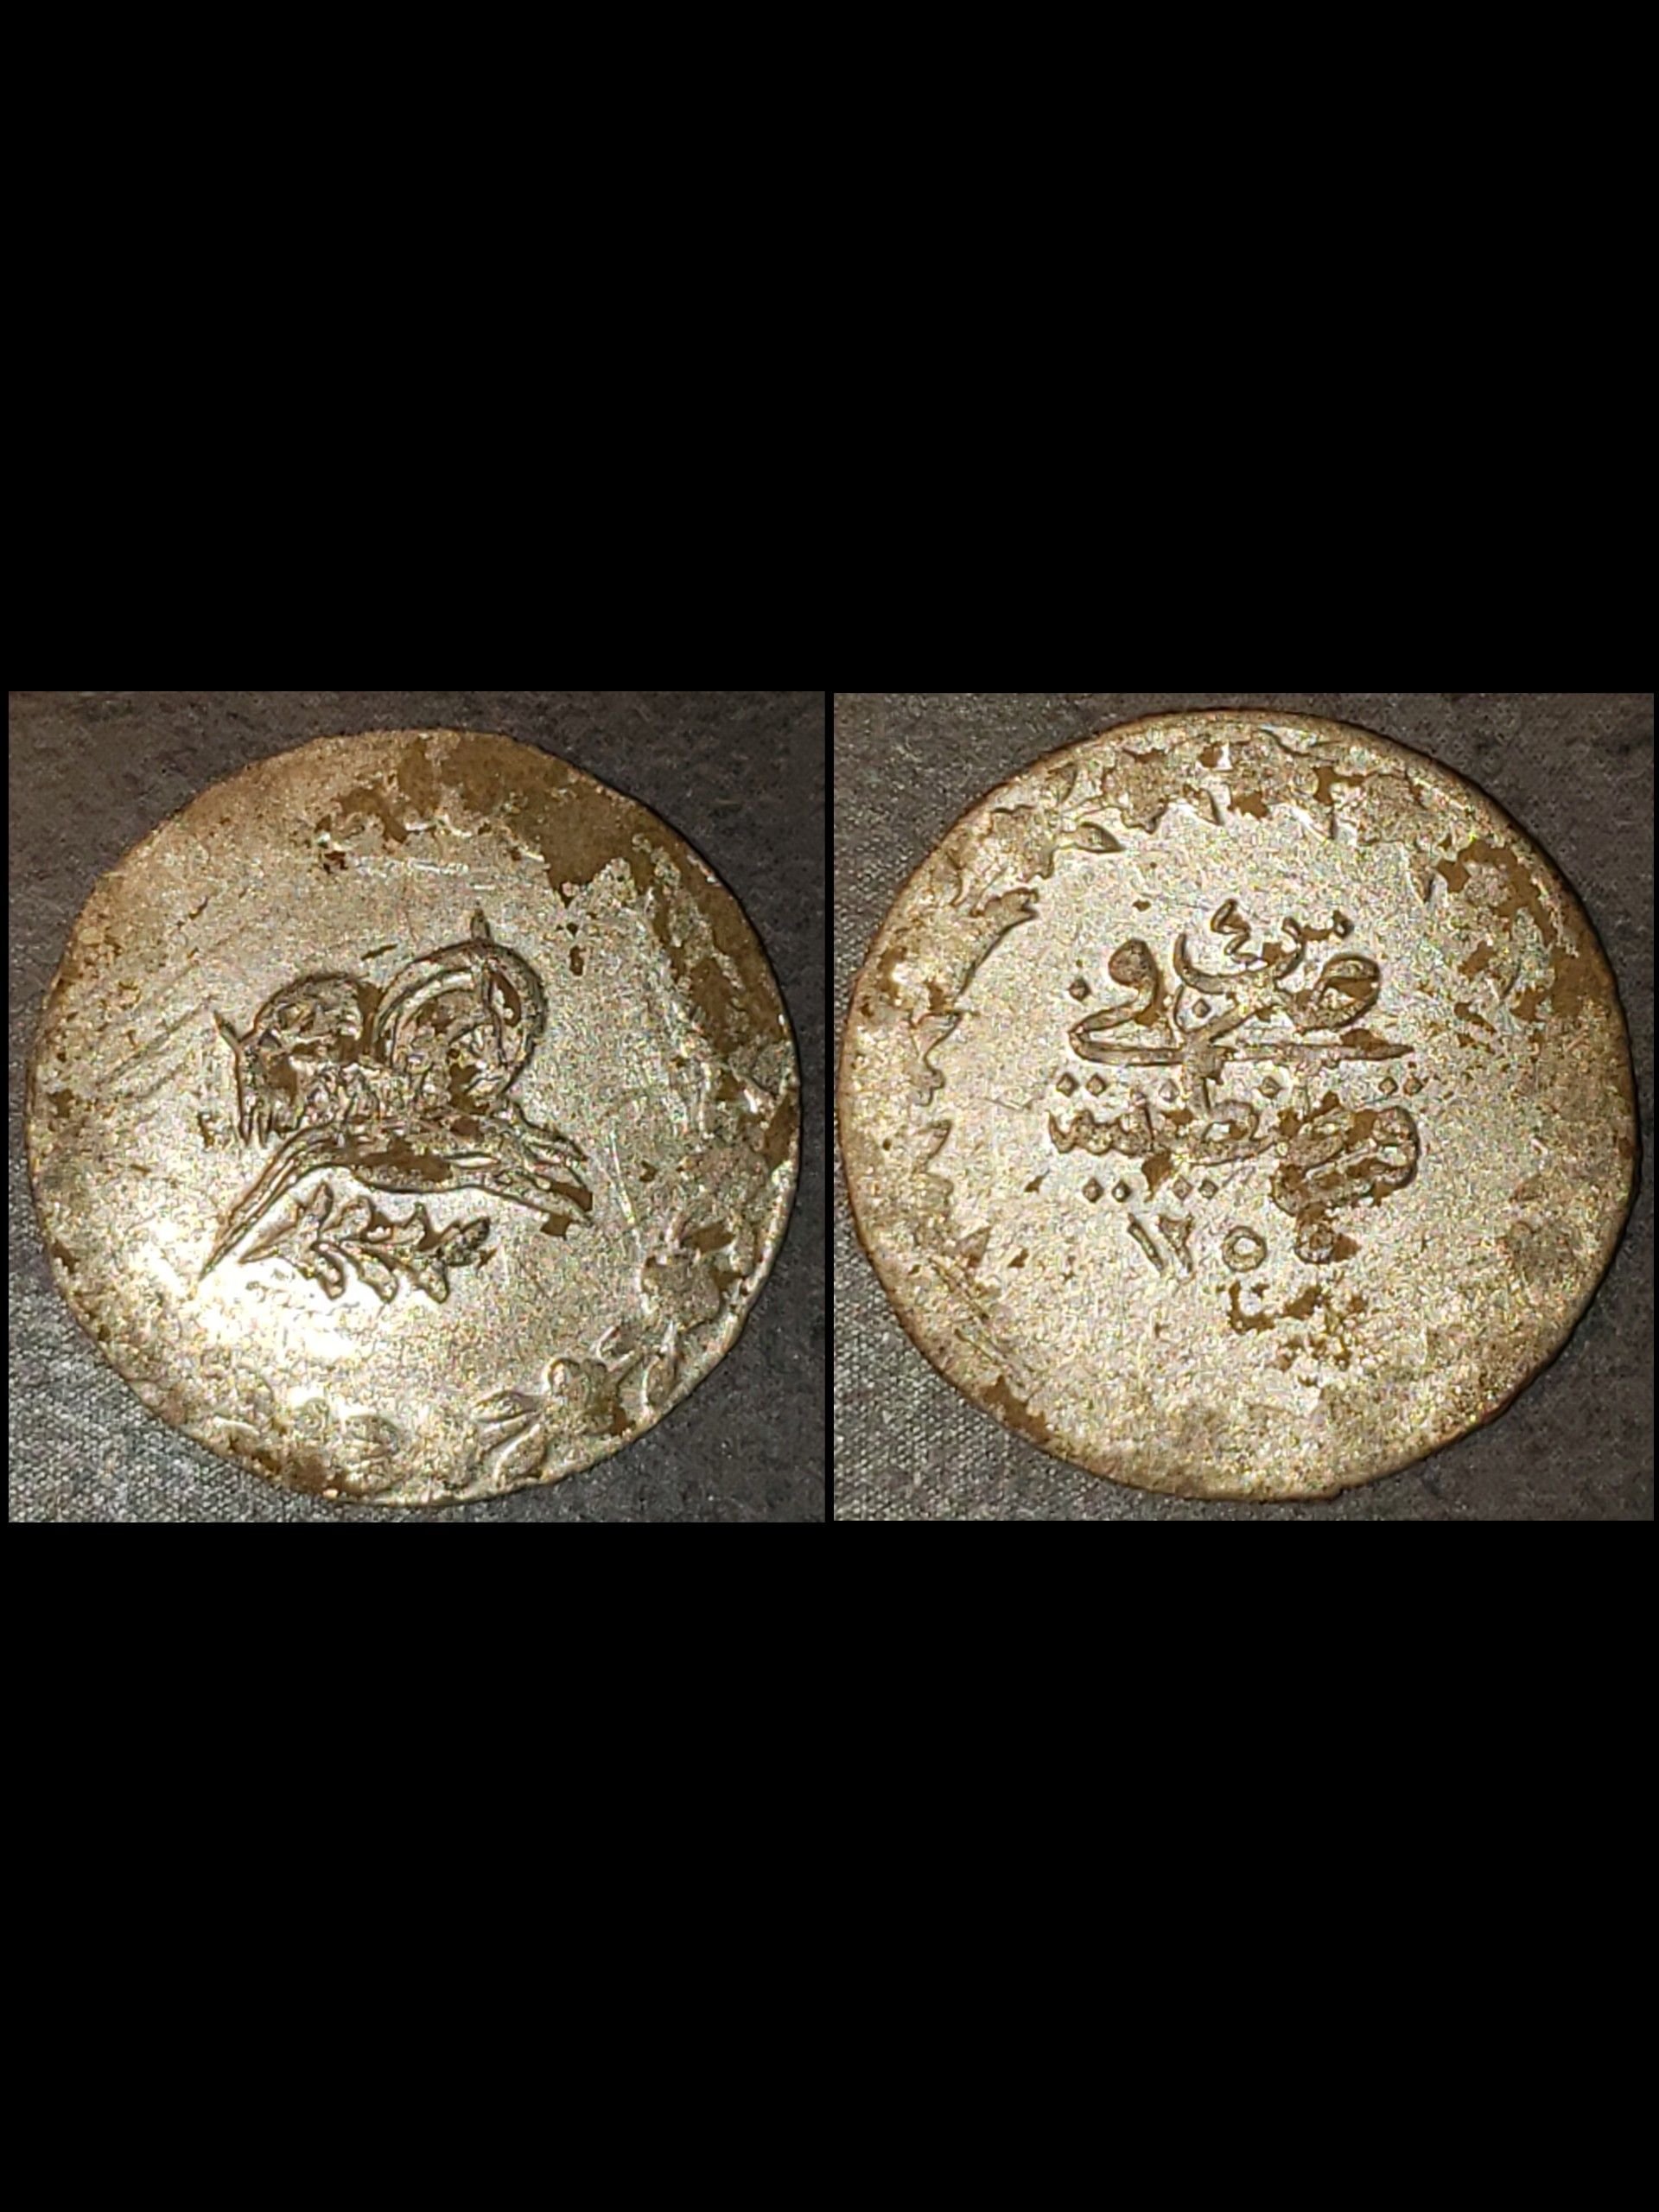 Medieval coin, Ottoman Empire coin